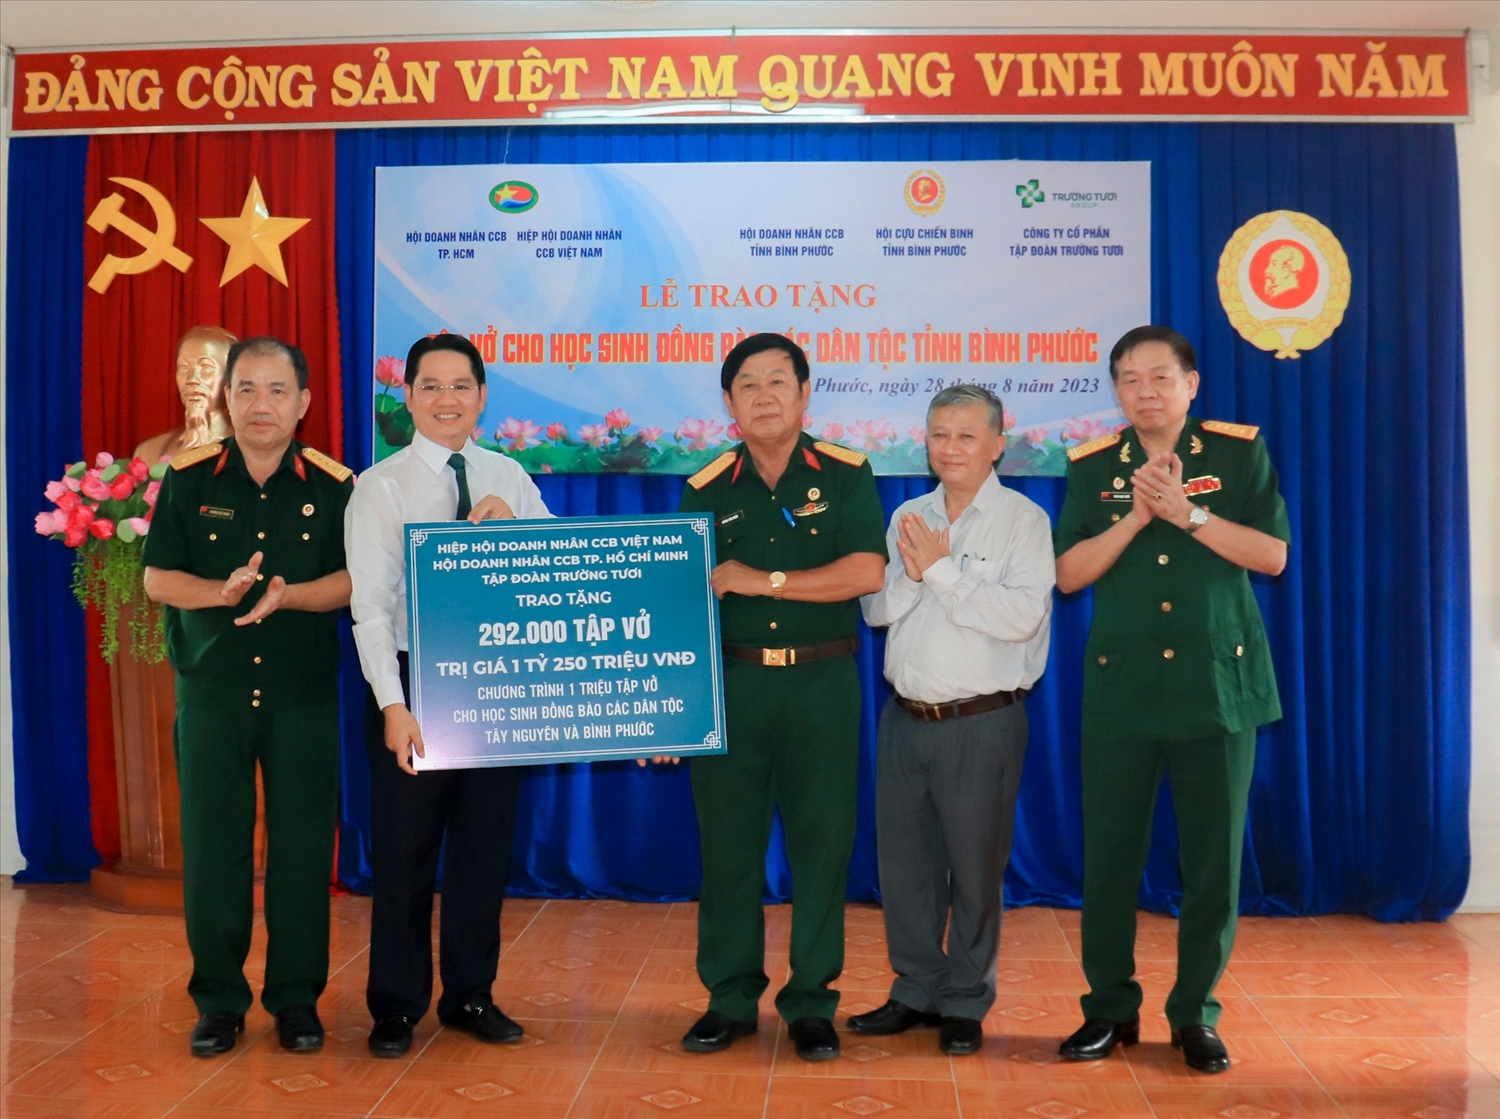 Tổng số tập vở trao tặng cho các em trong chương trình tại tỉnh Bình Phước là 292.000 quyển, trị giá 1 tỳ 250 triệu đồng